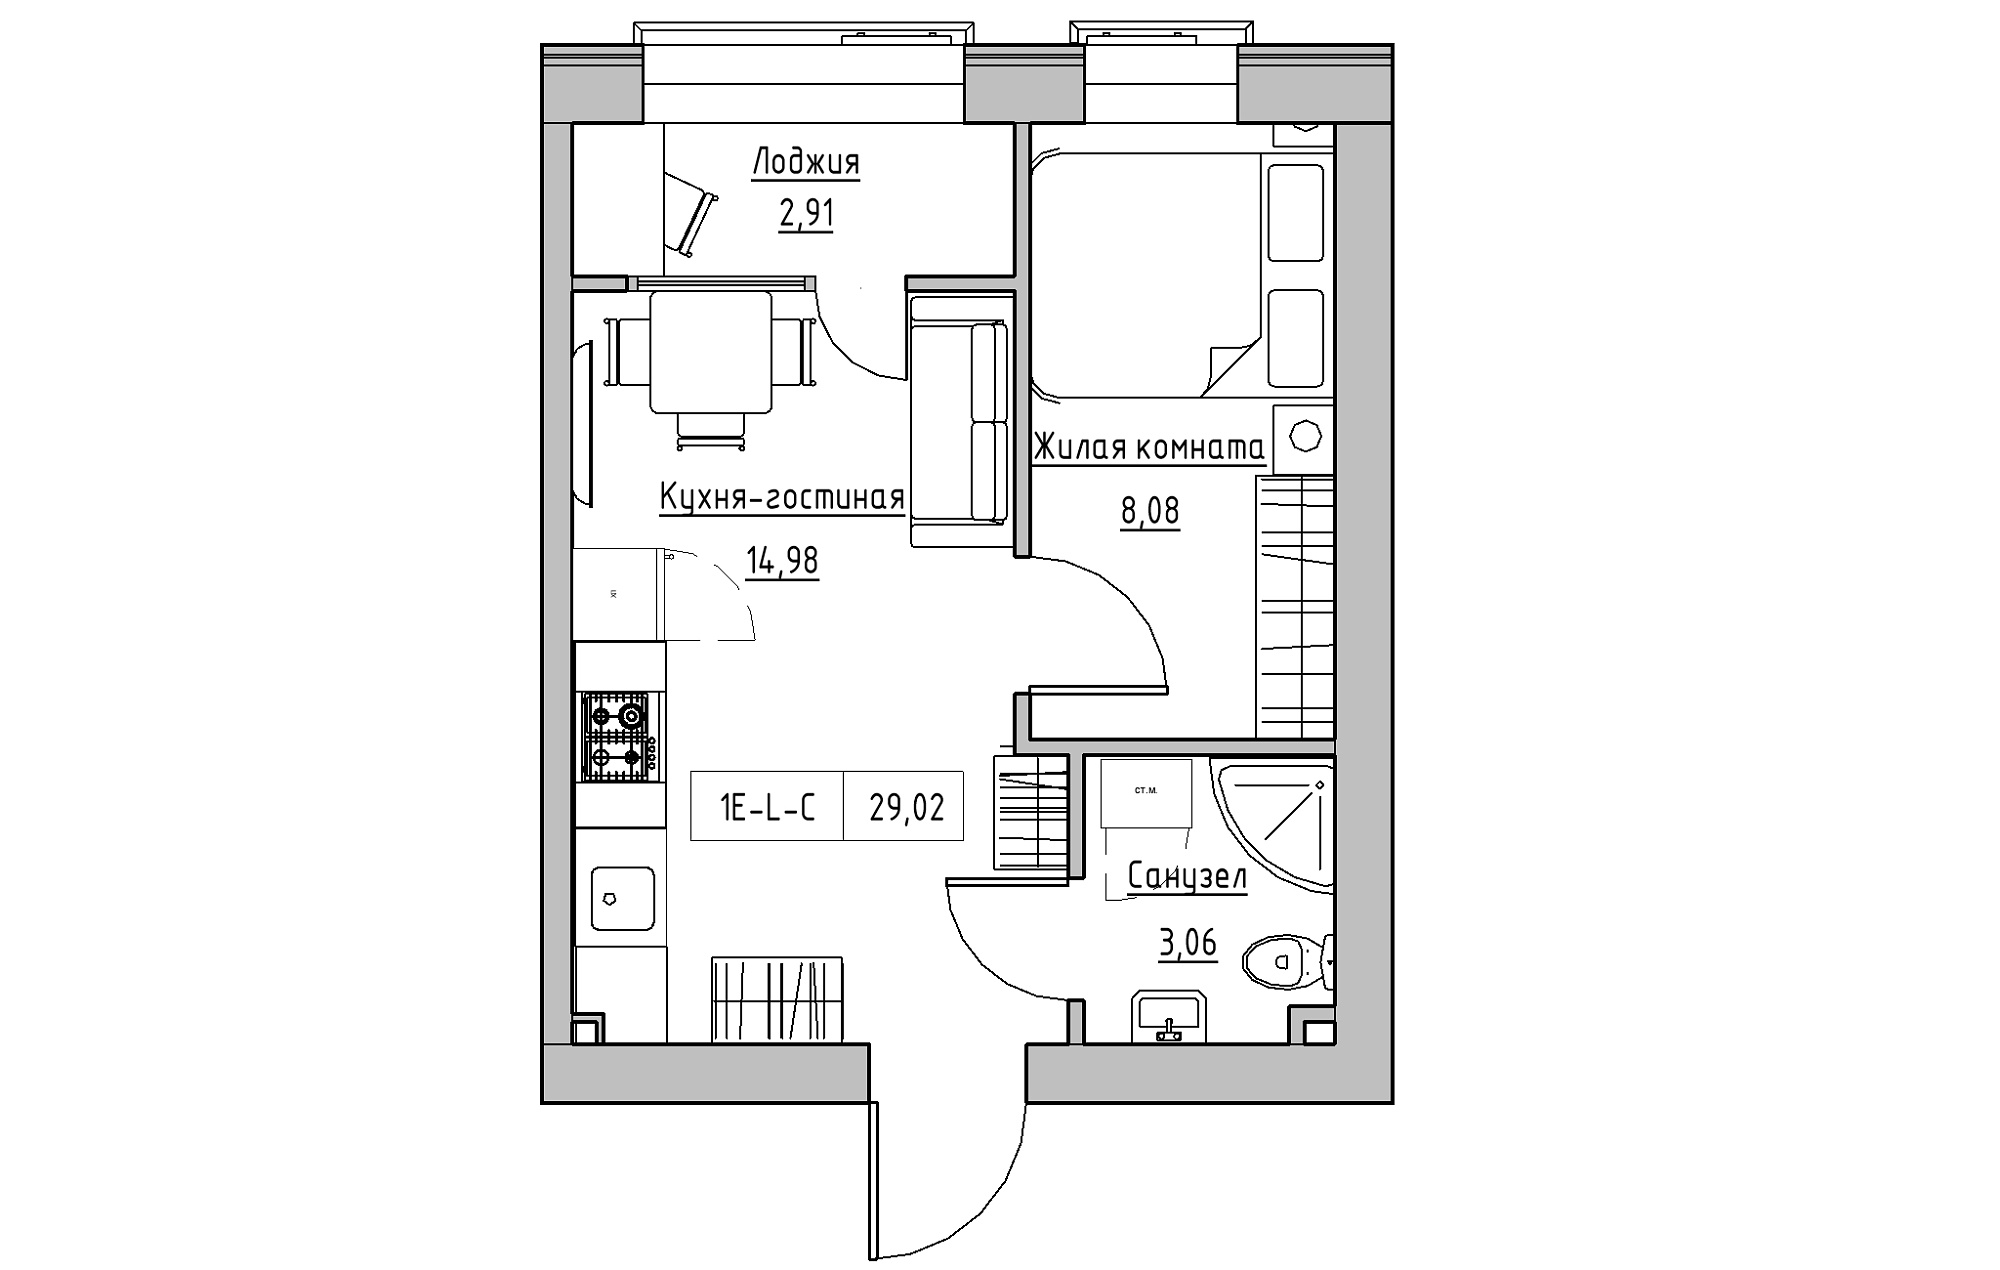 Планування 1-к квартира площею 29.02м2, KS-018-04/0007.